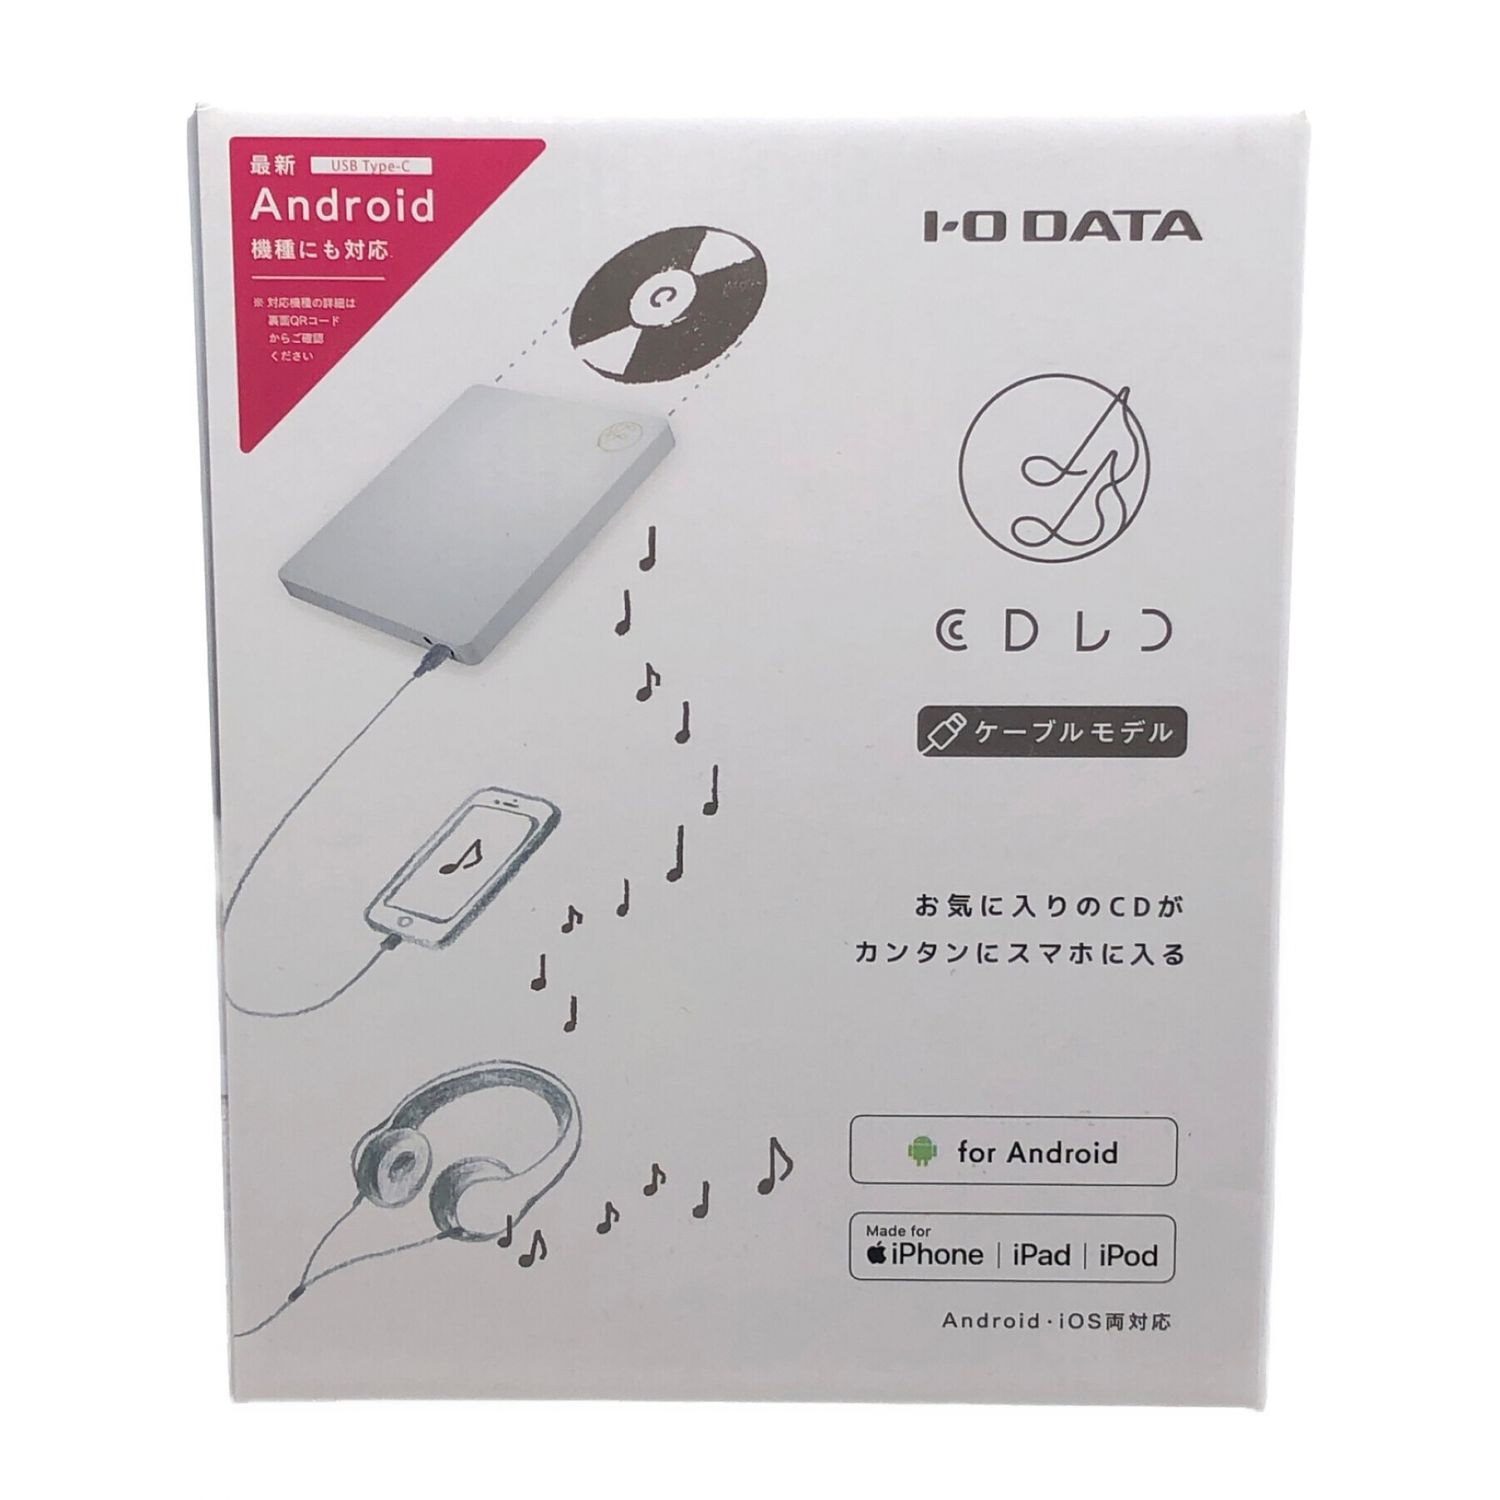 I-O DATA iPhone スマホ CD取込 iOS Android Wi-Fi接続 「CDレコ